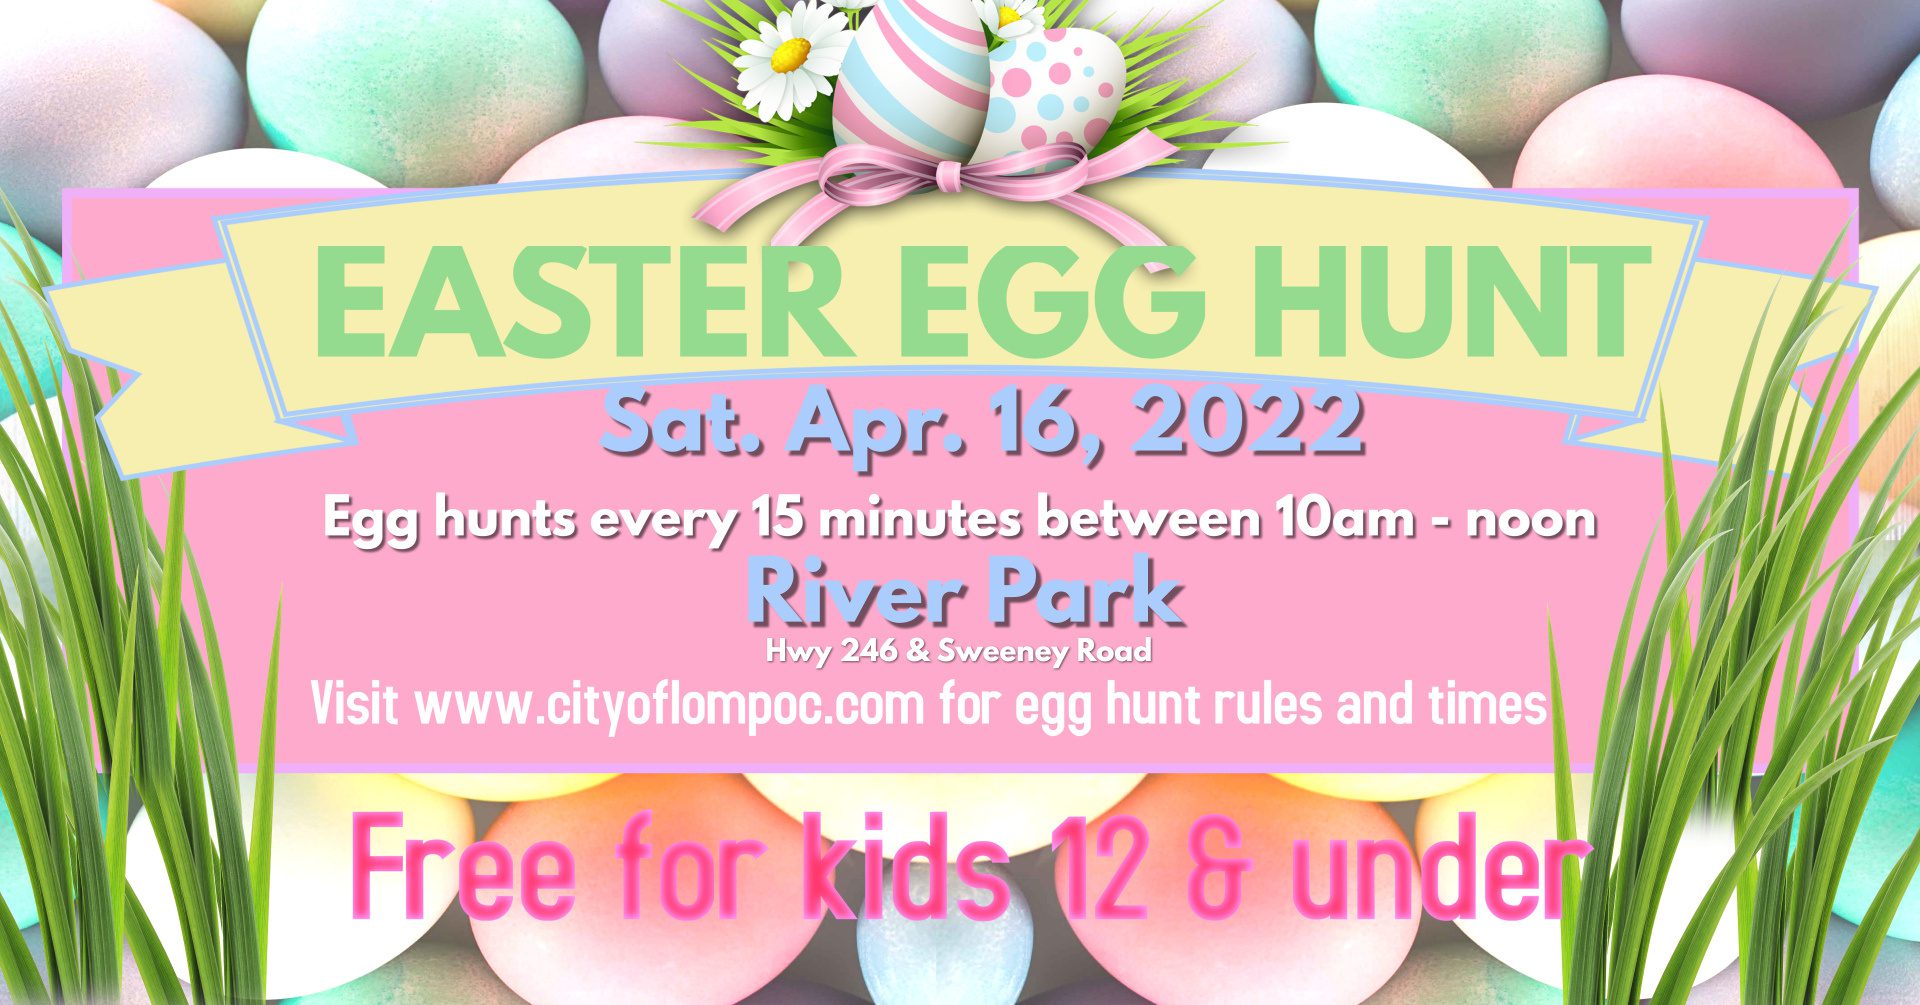 Easter Egg Hunt - River Park; April 16, 2022 @ 10:00 am